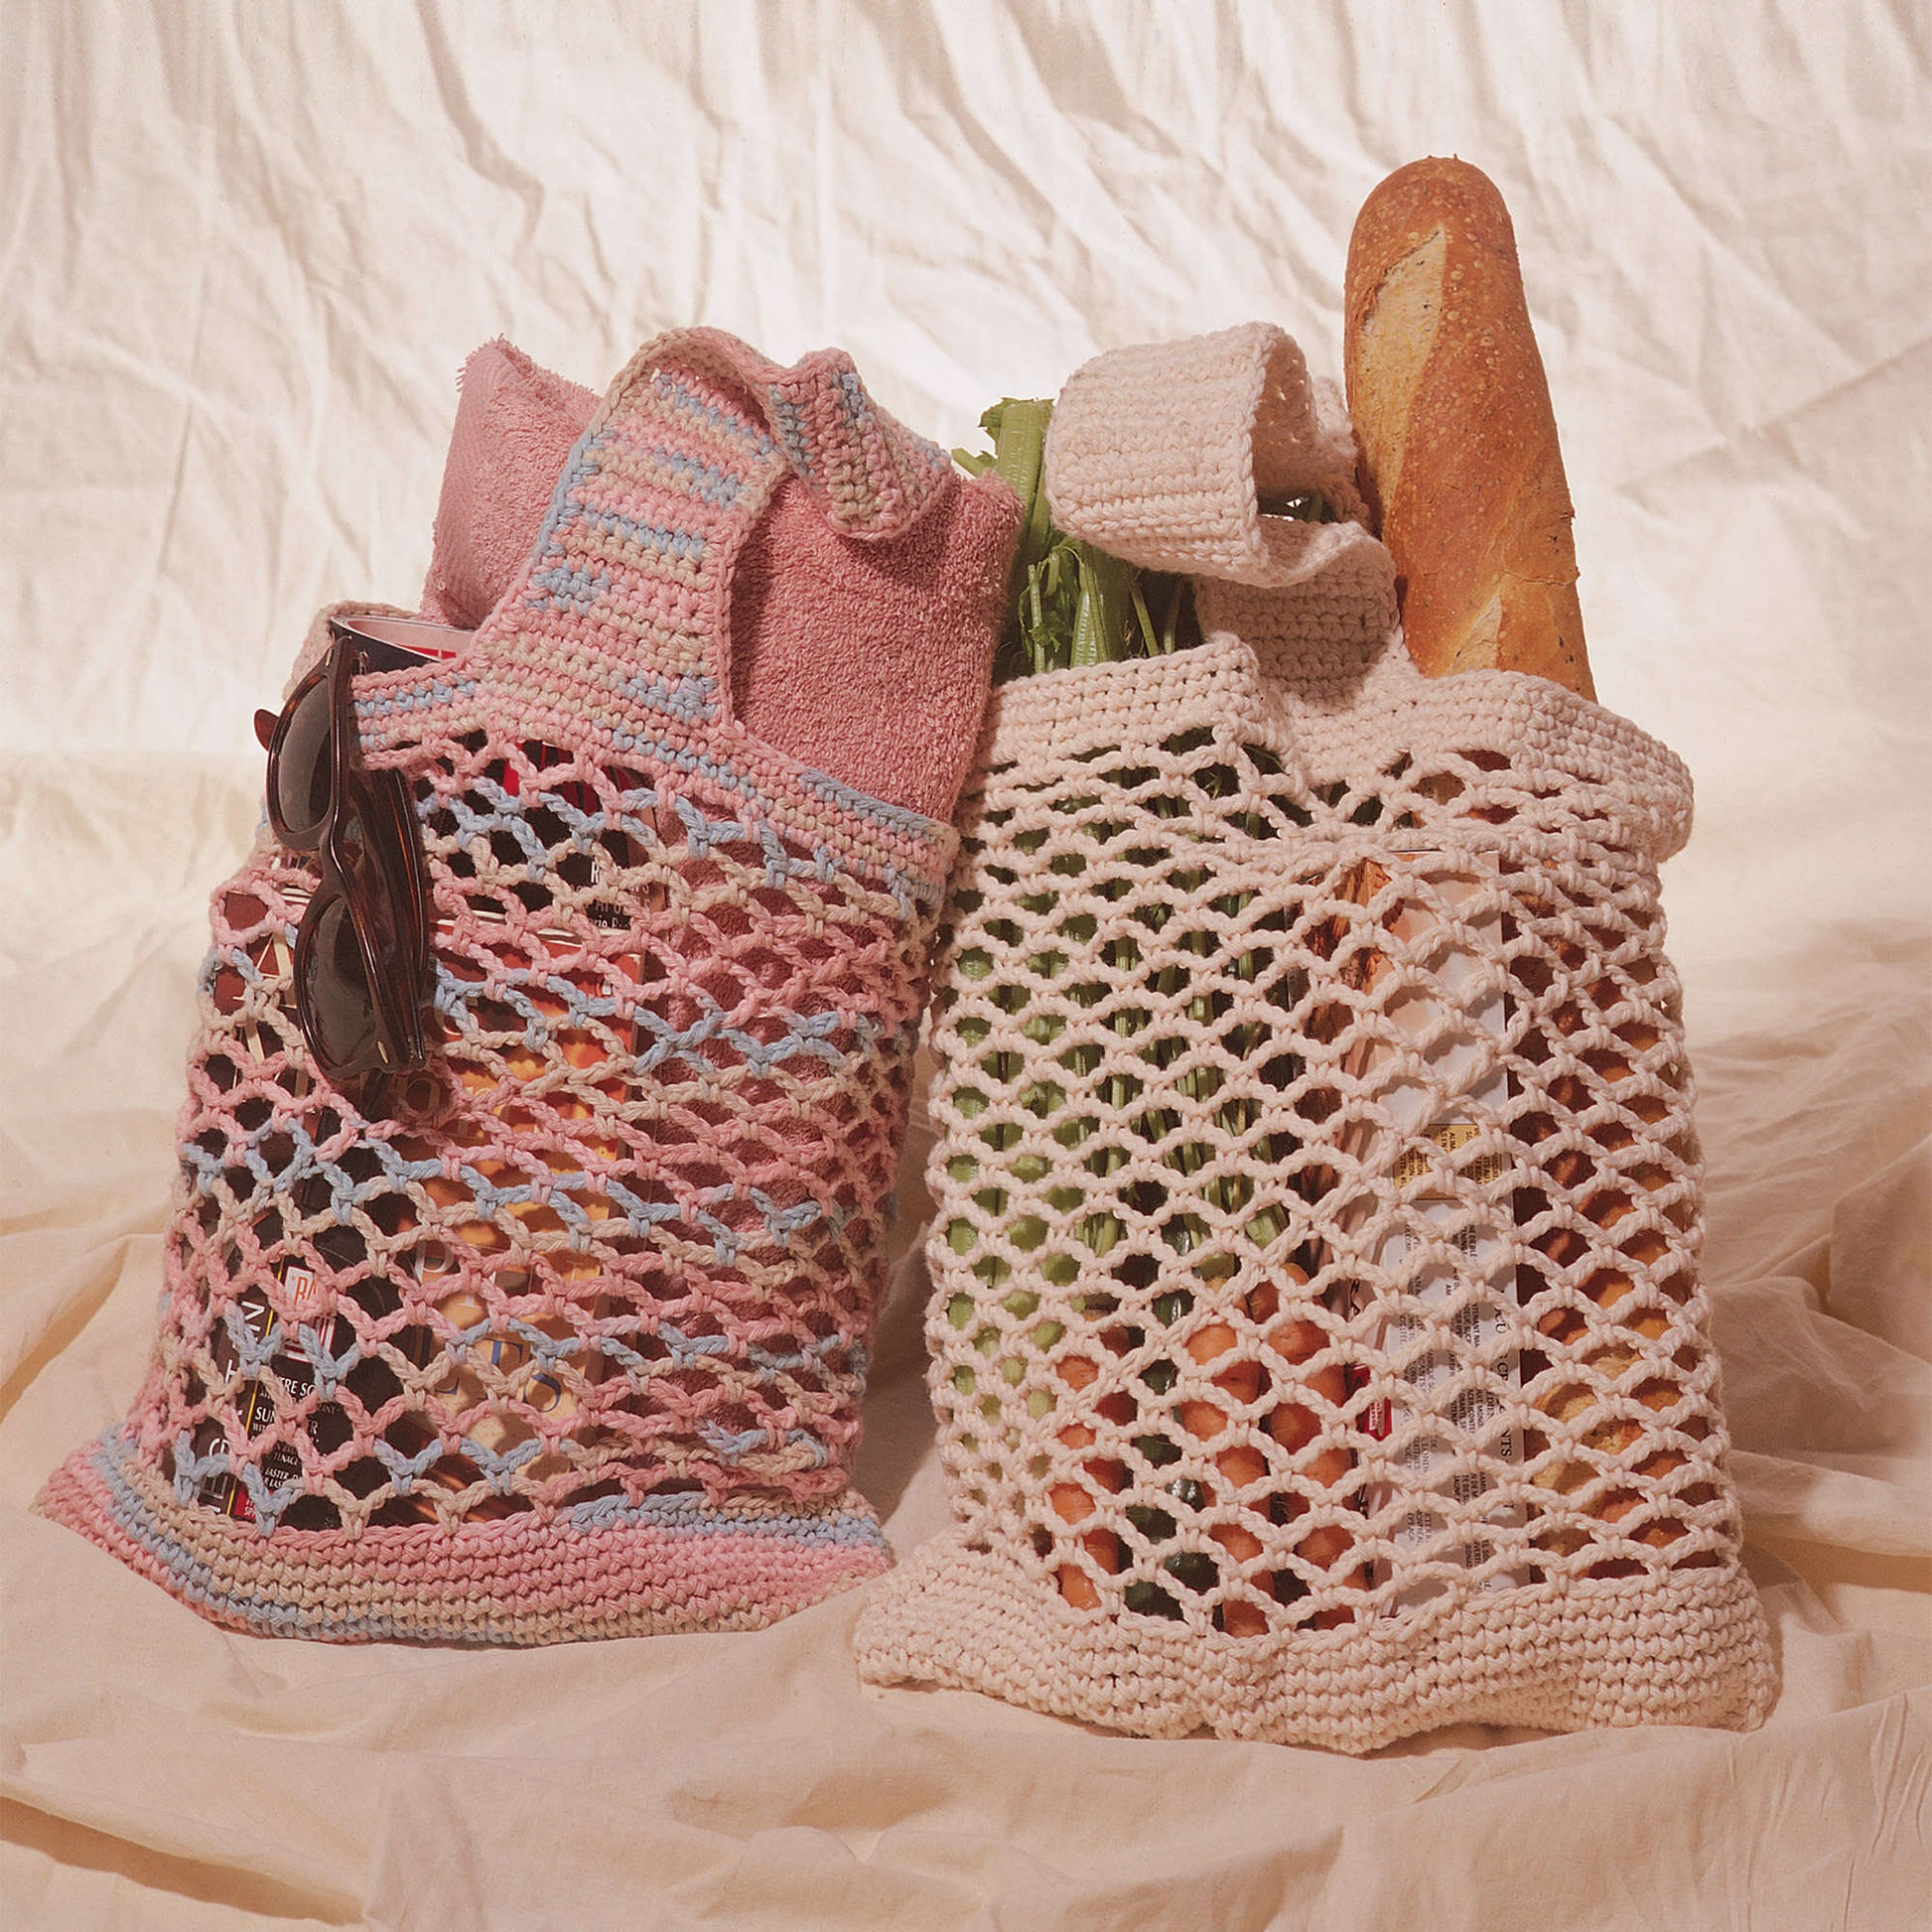 Lily Sugar'n Cream Market Bag Crochet Bag made in Lily Sugar'n Cream The Original yarn